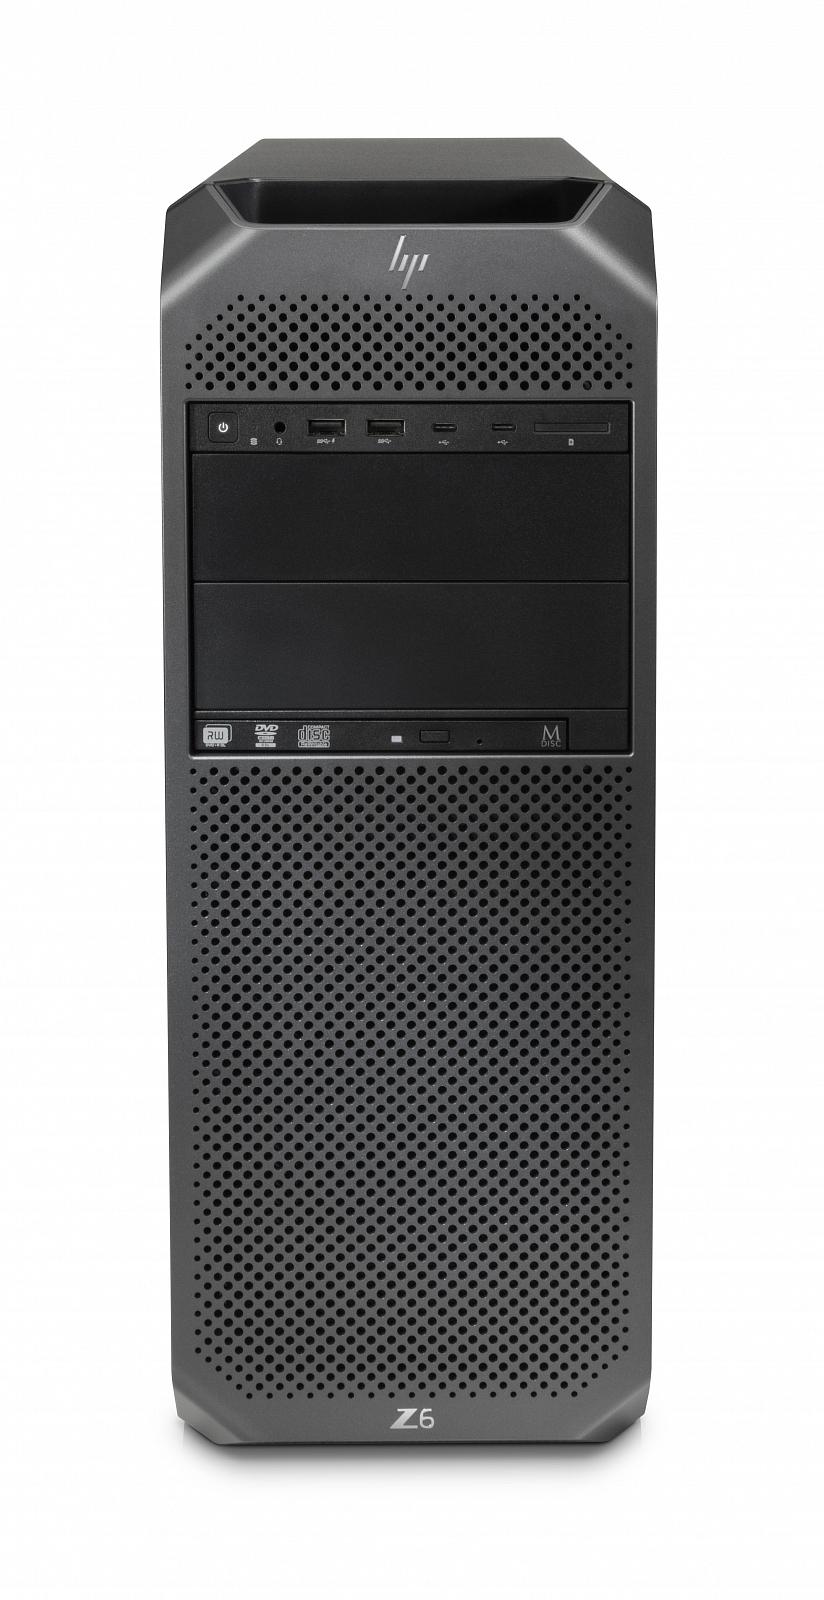   HP Z6 G4 Workstation (2WU44EA)  2